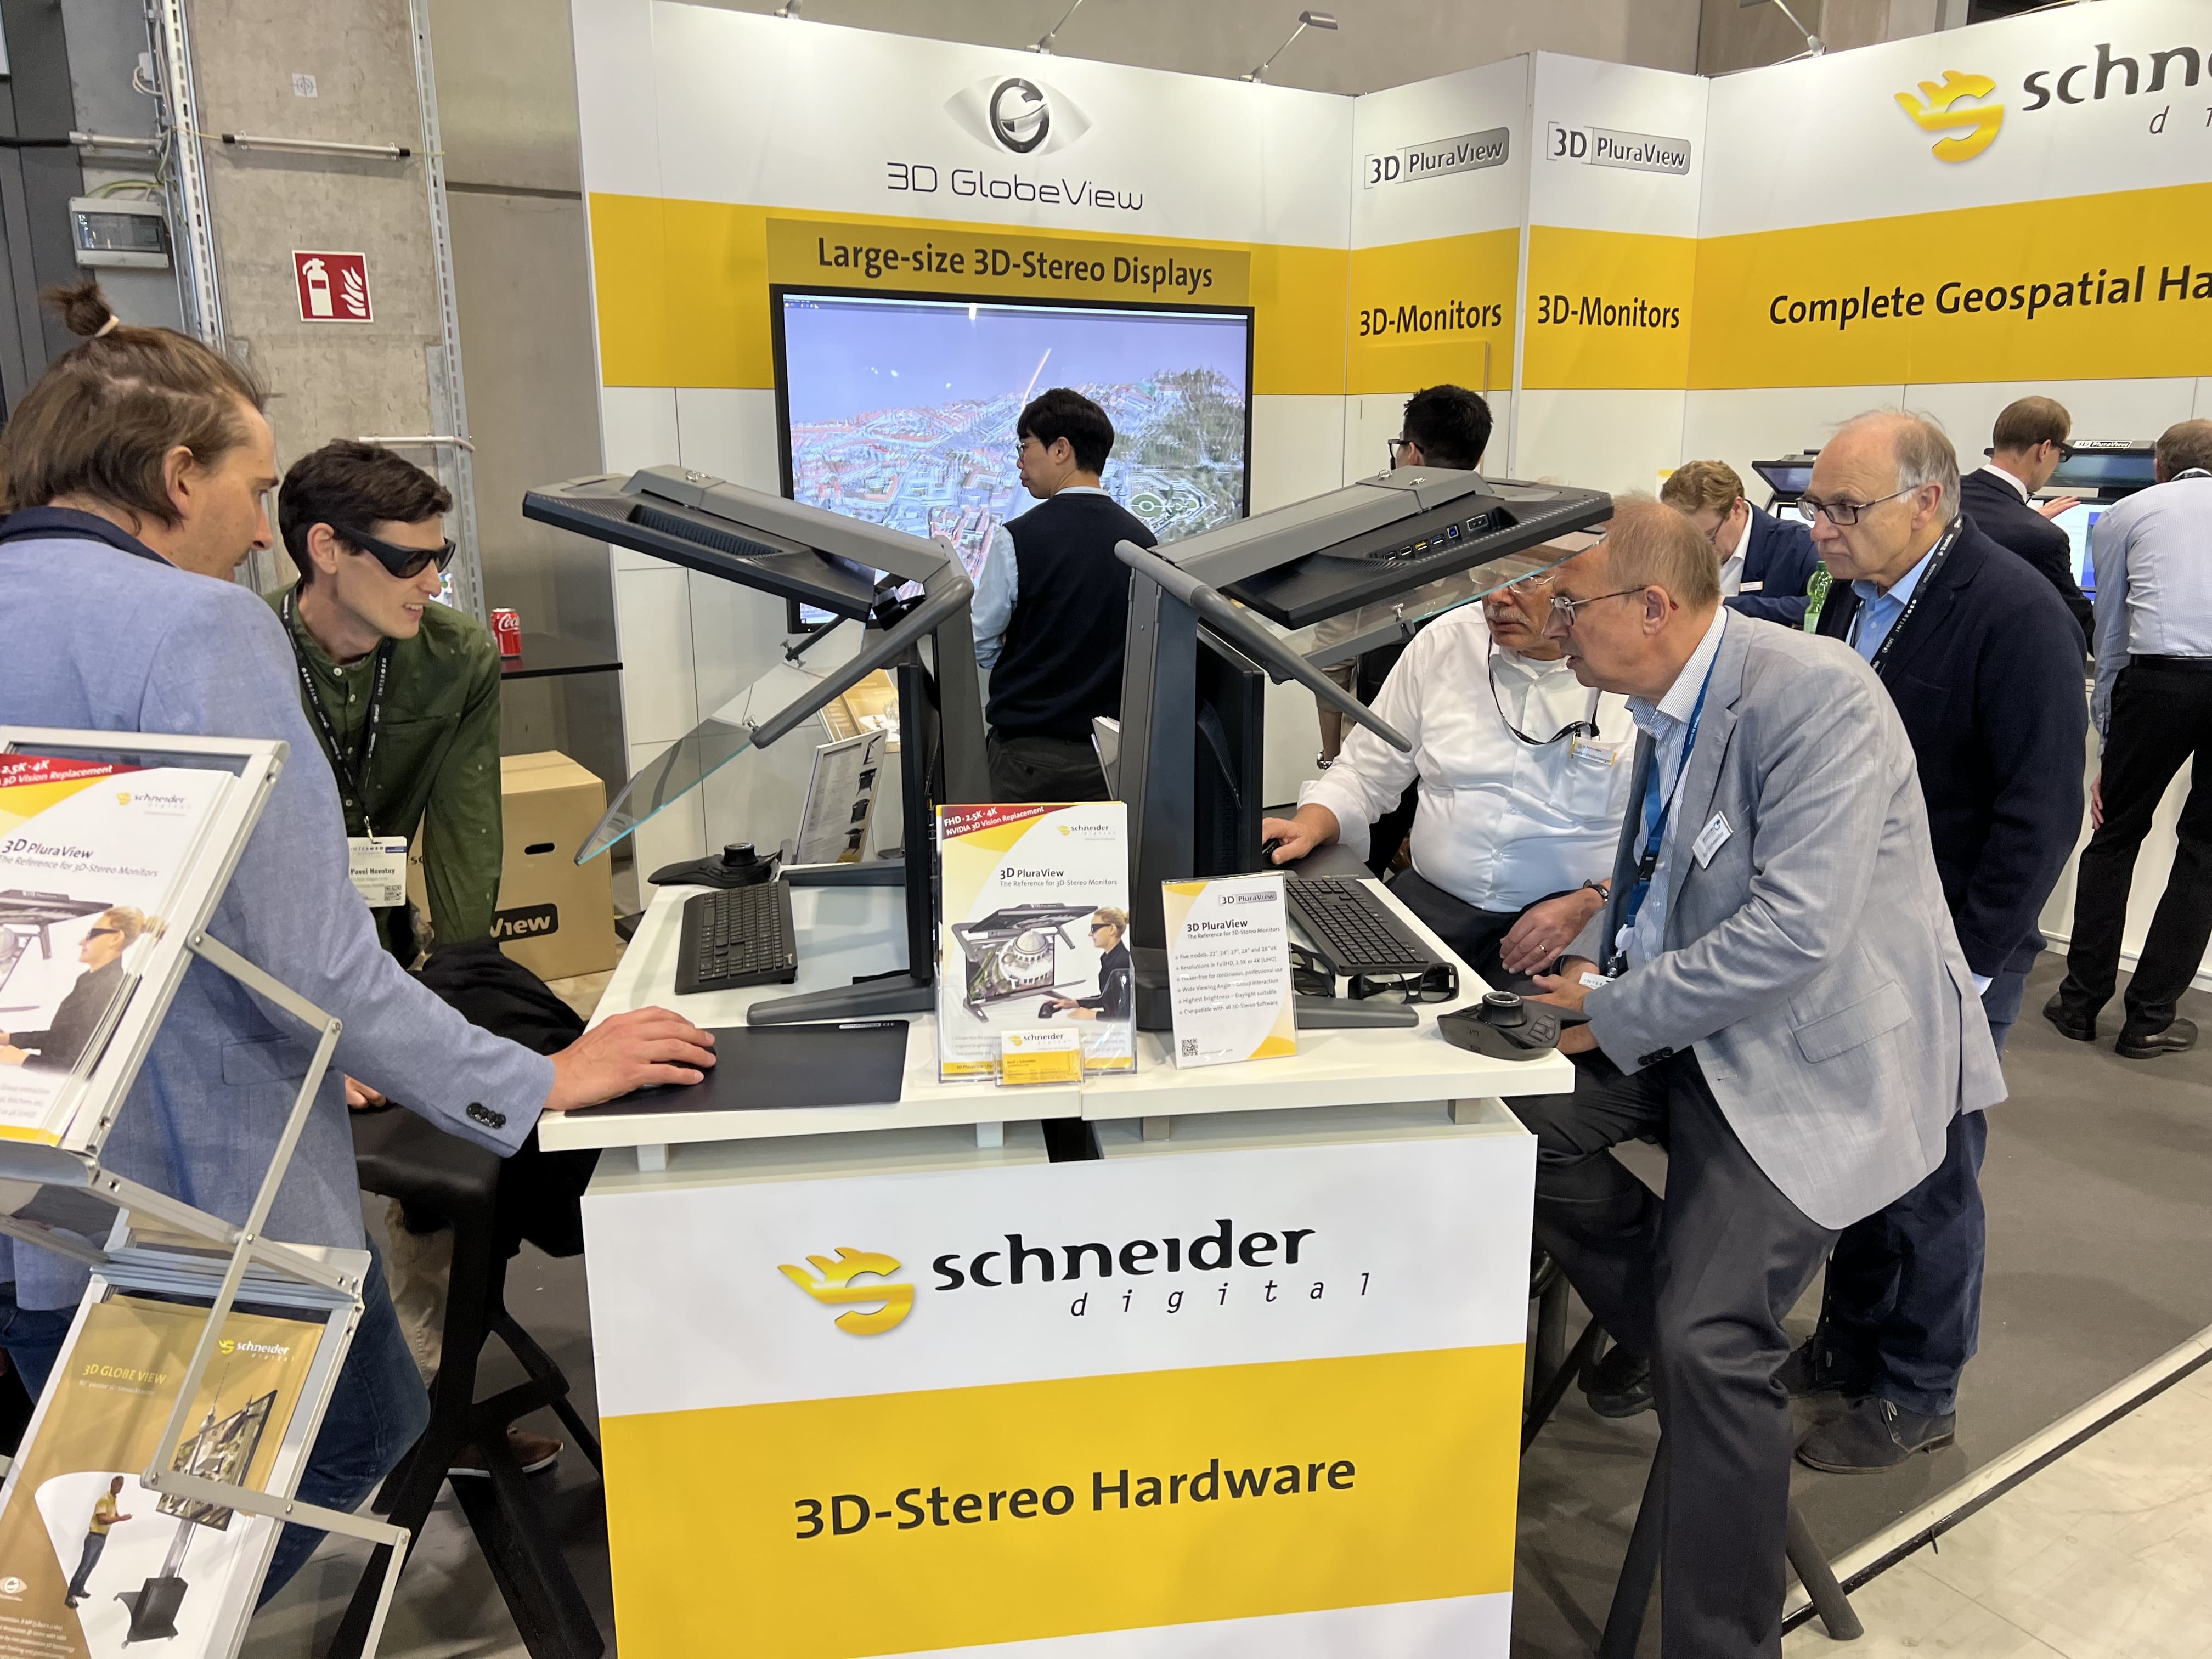 Schneider Digital Review INTERGEO 2023: 3D PluraView live